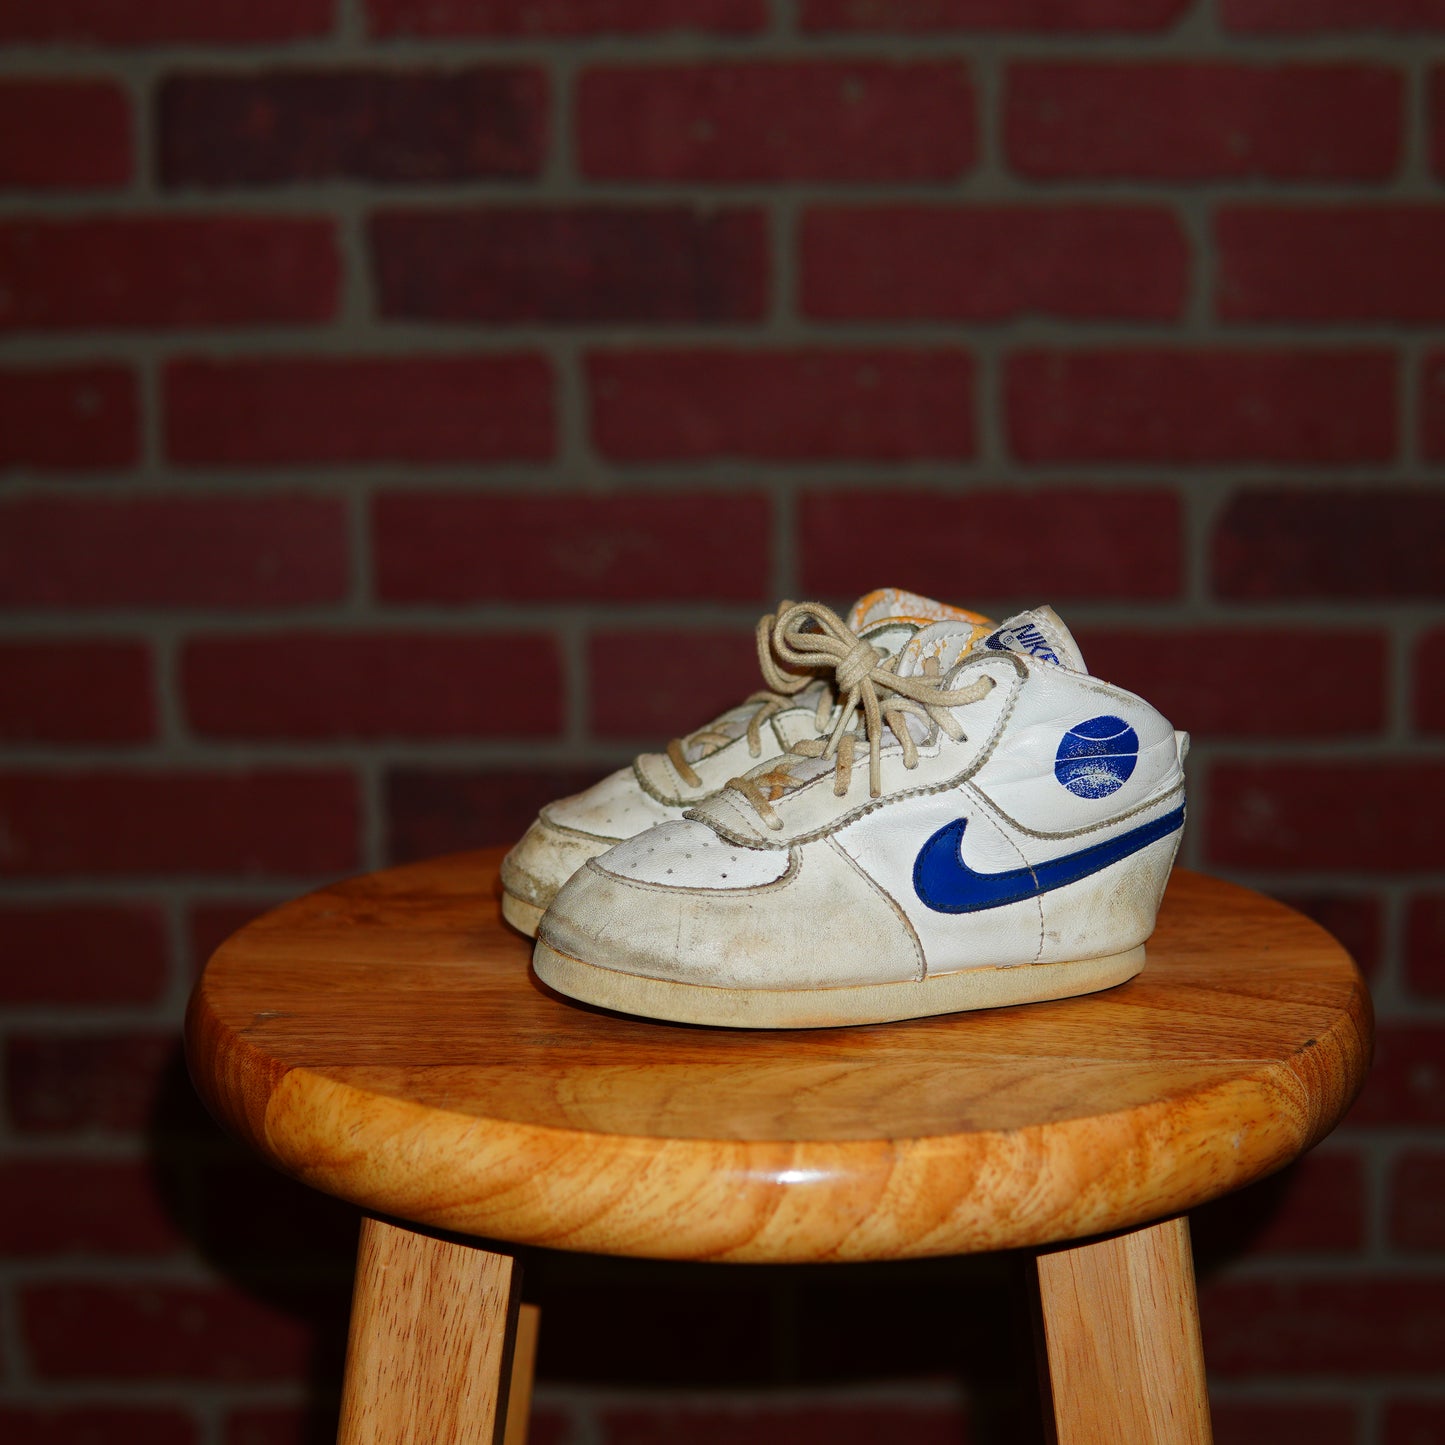 VTG 1985 Youth Nike Jordan 1 White/Blue Sneakers